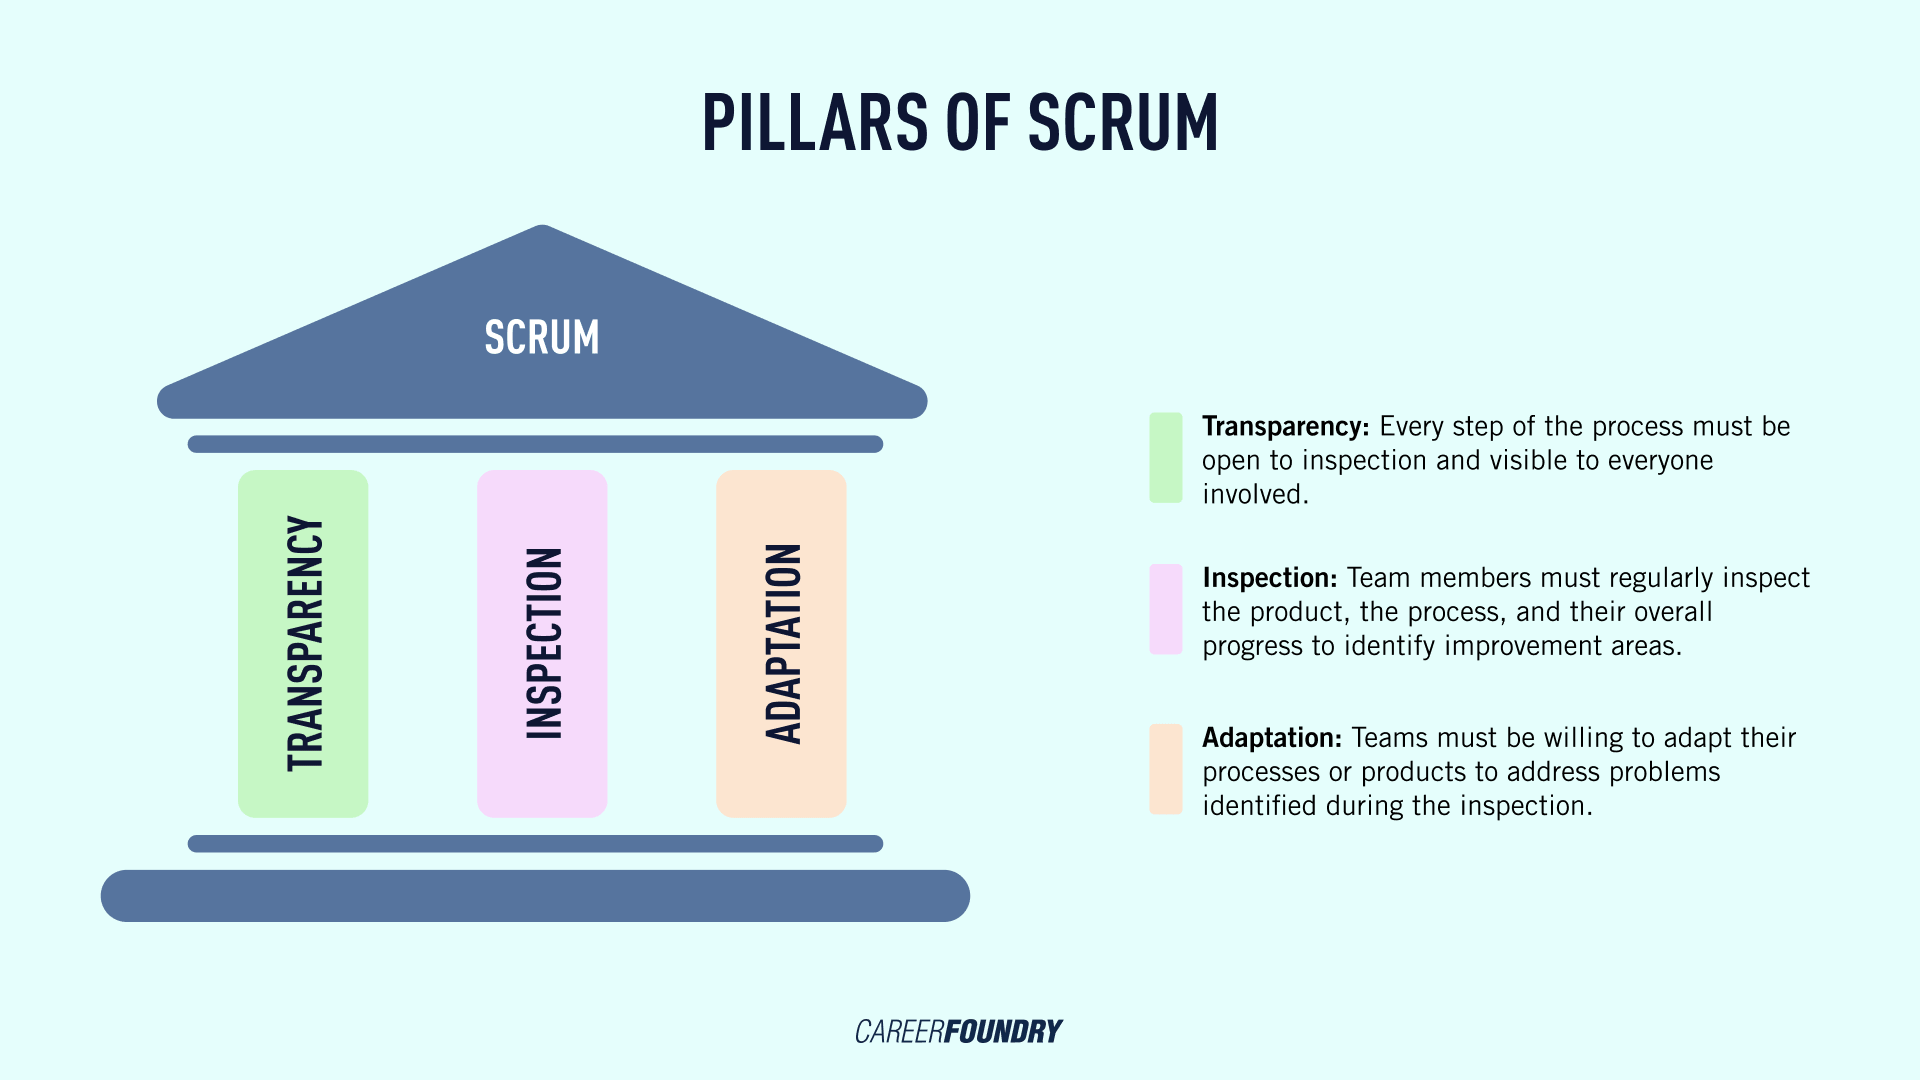 图形显示Scrum三大柱面:透明性、检验和适配性